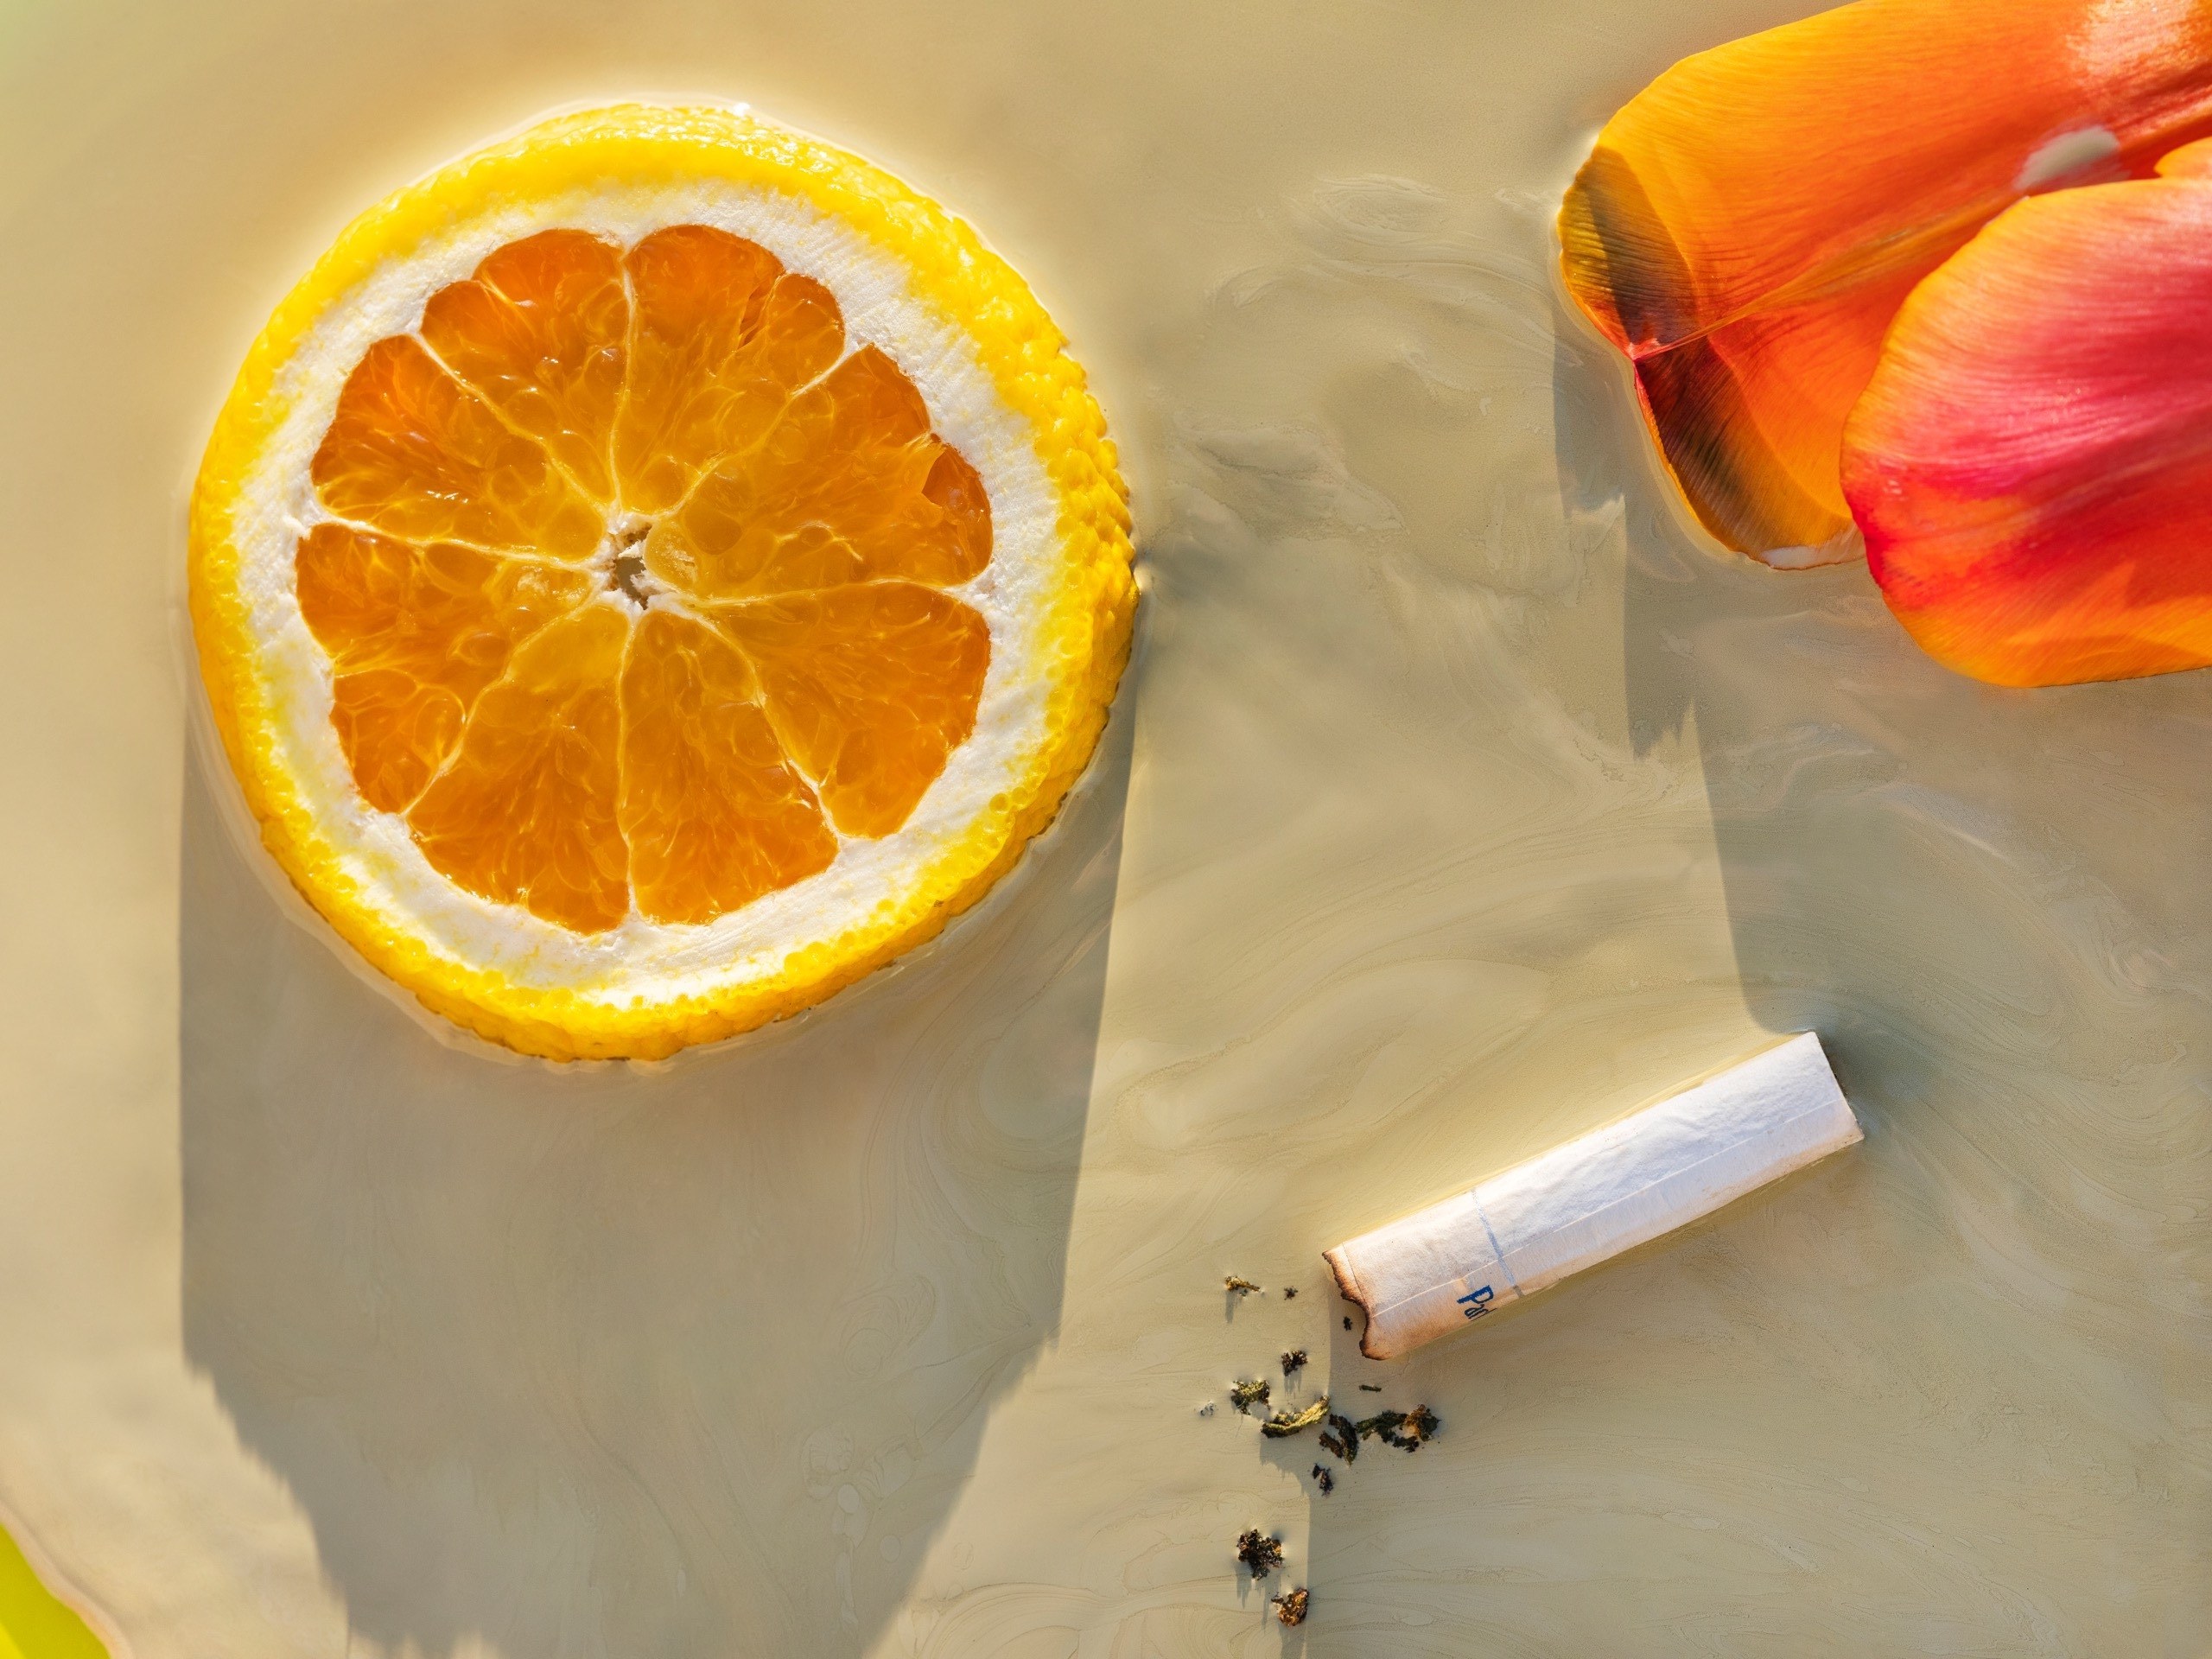 A slice of orange, a cigarette bud and some orange petals, on an orange-beige background.